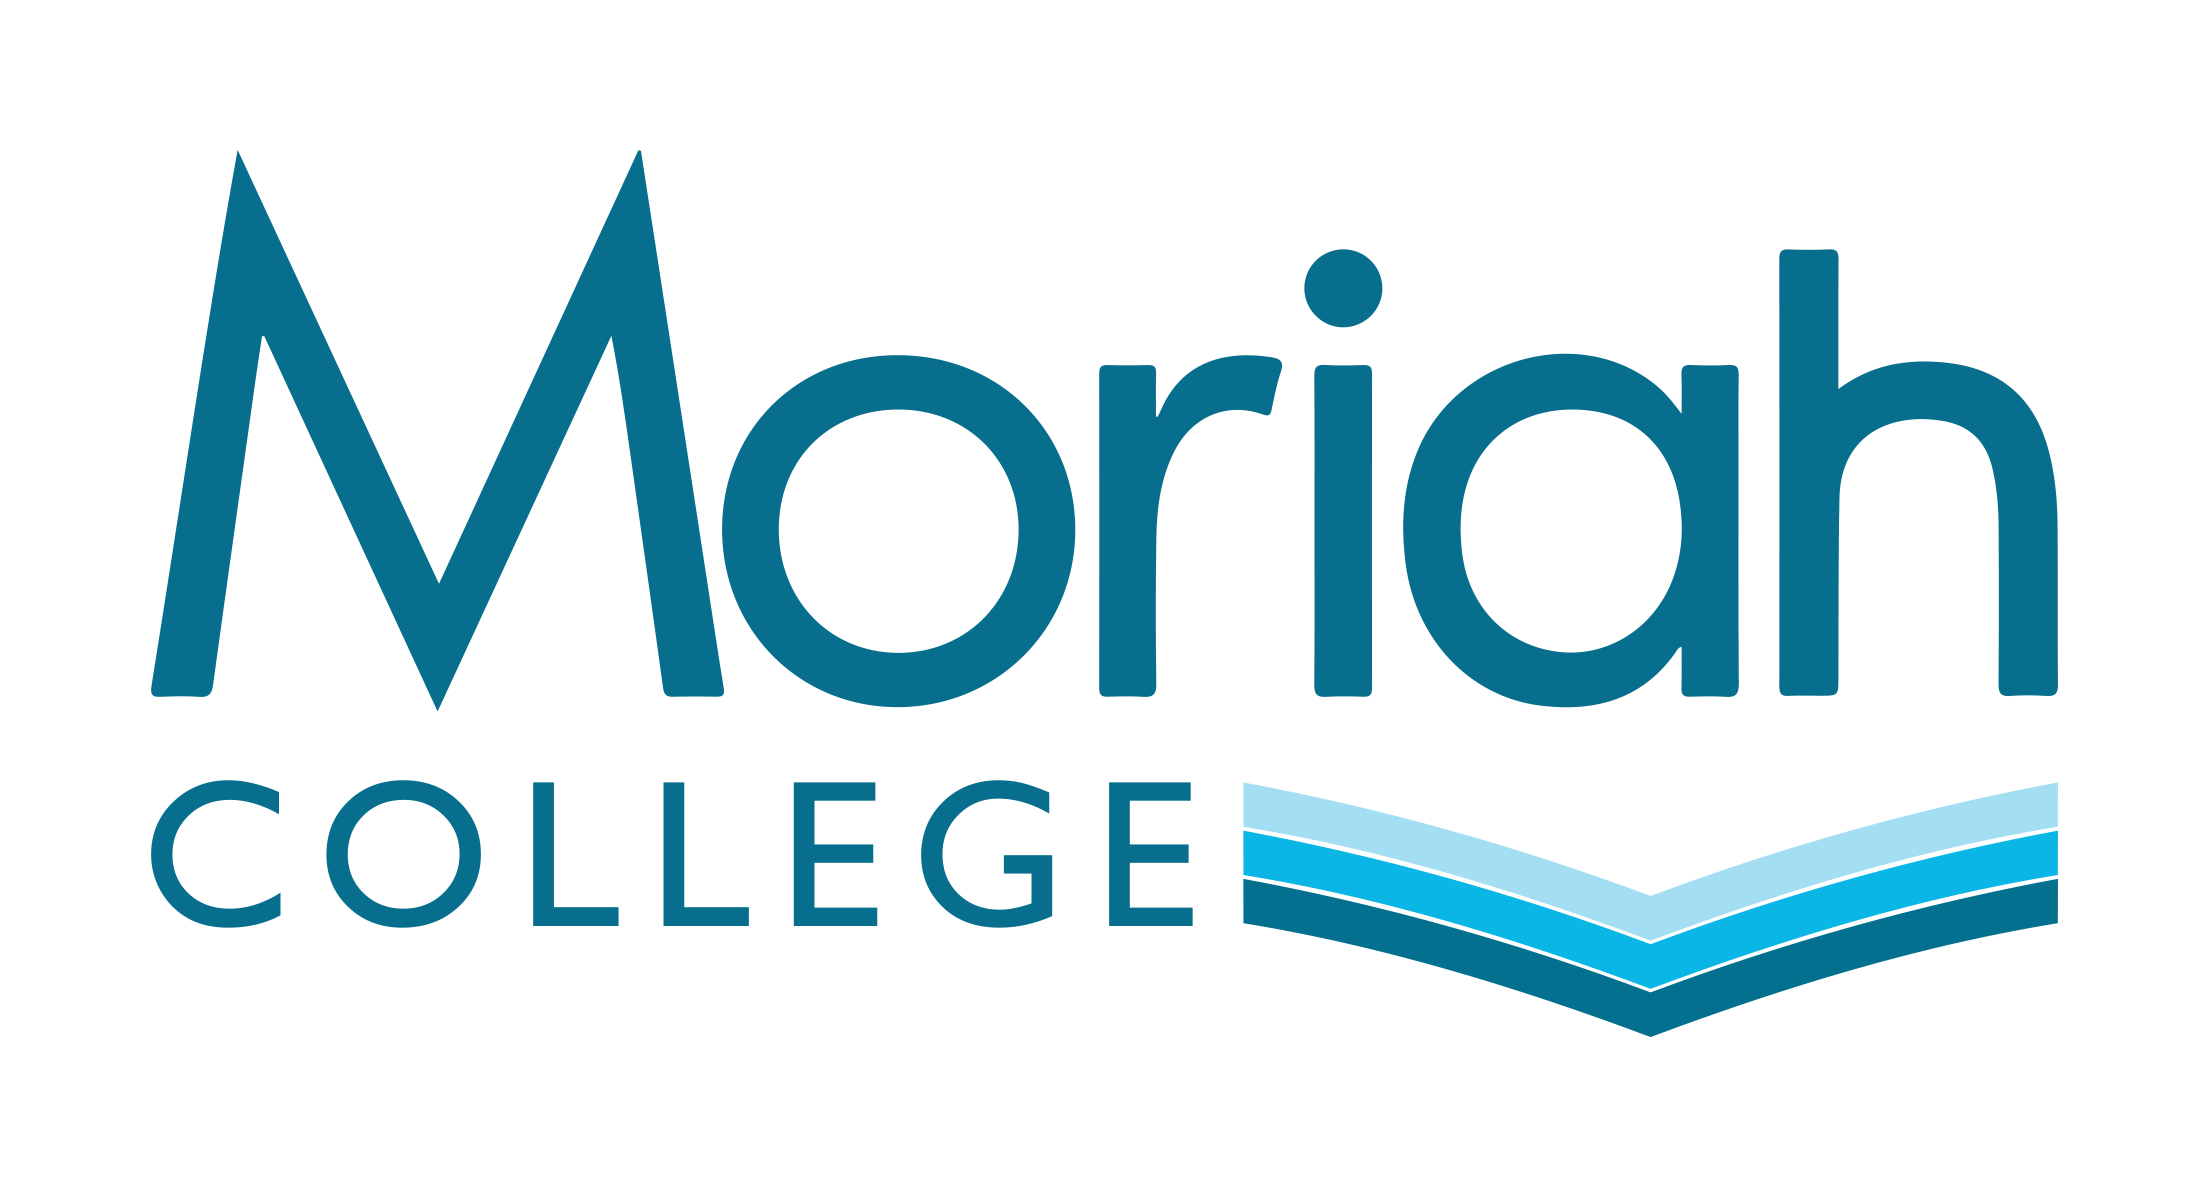 Moriah College